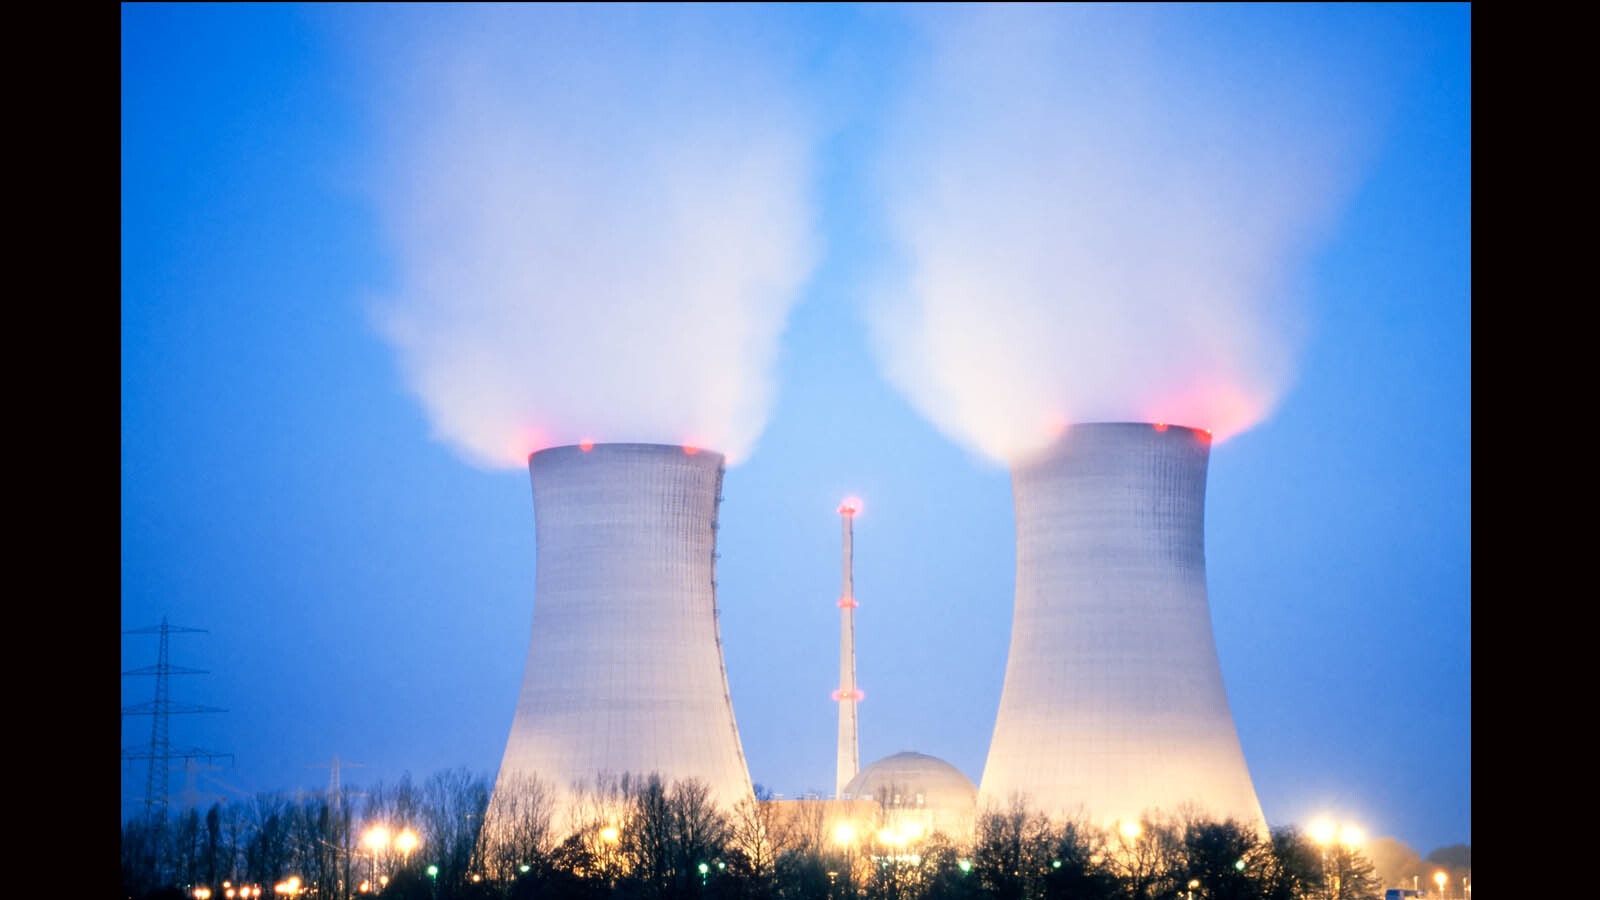 Nuke power plant part 2